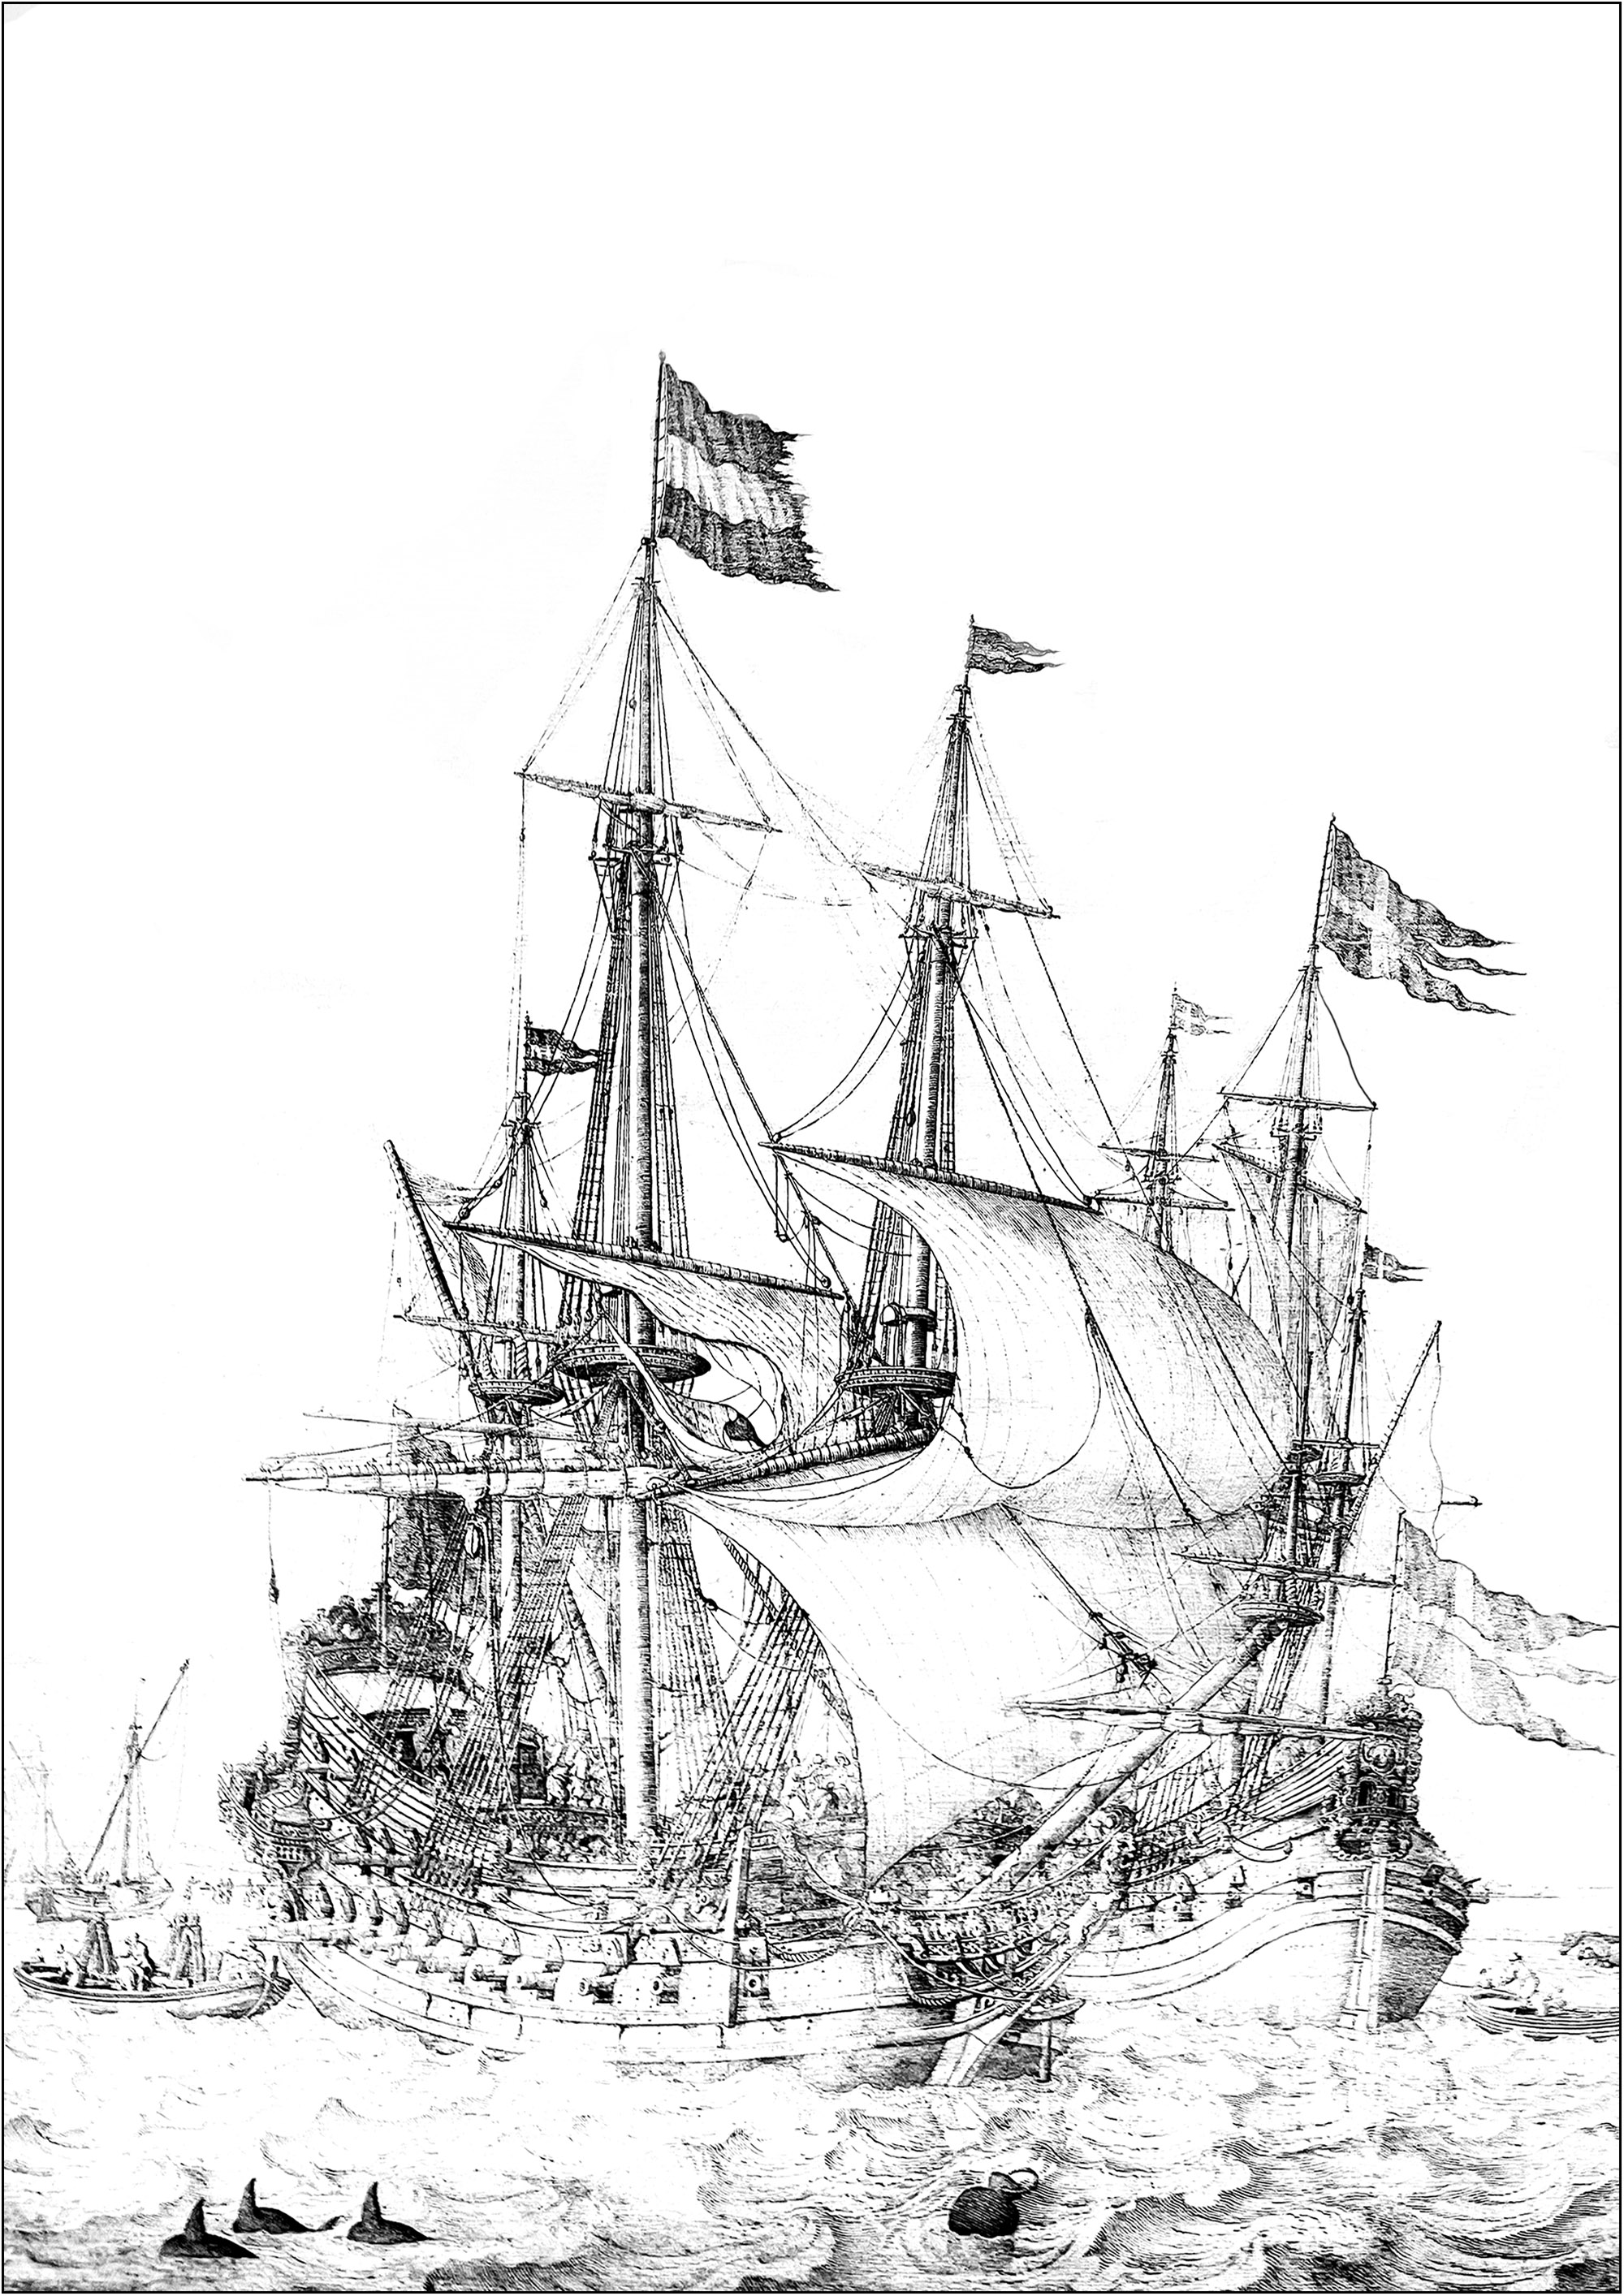 Gravura de um navio de guerra escocês do século XIII. Esta gravura encontra-se exposta no Museu Nacional da Escócia.